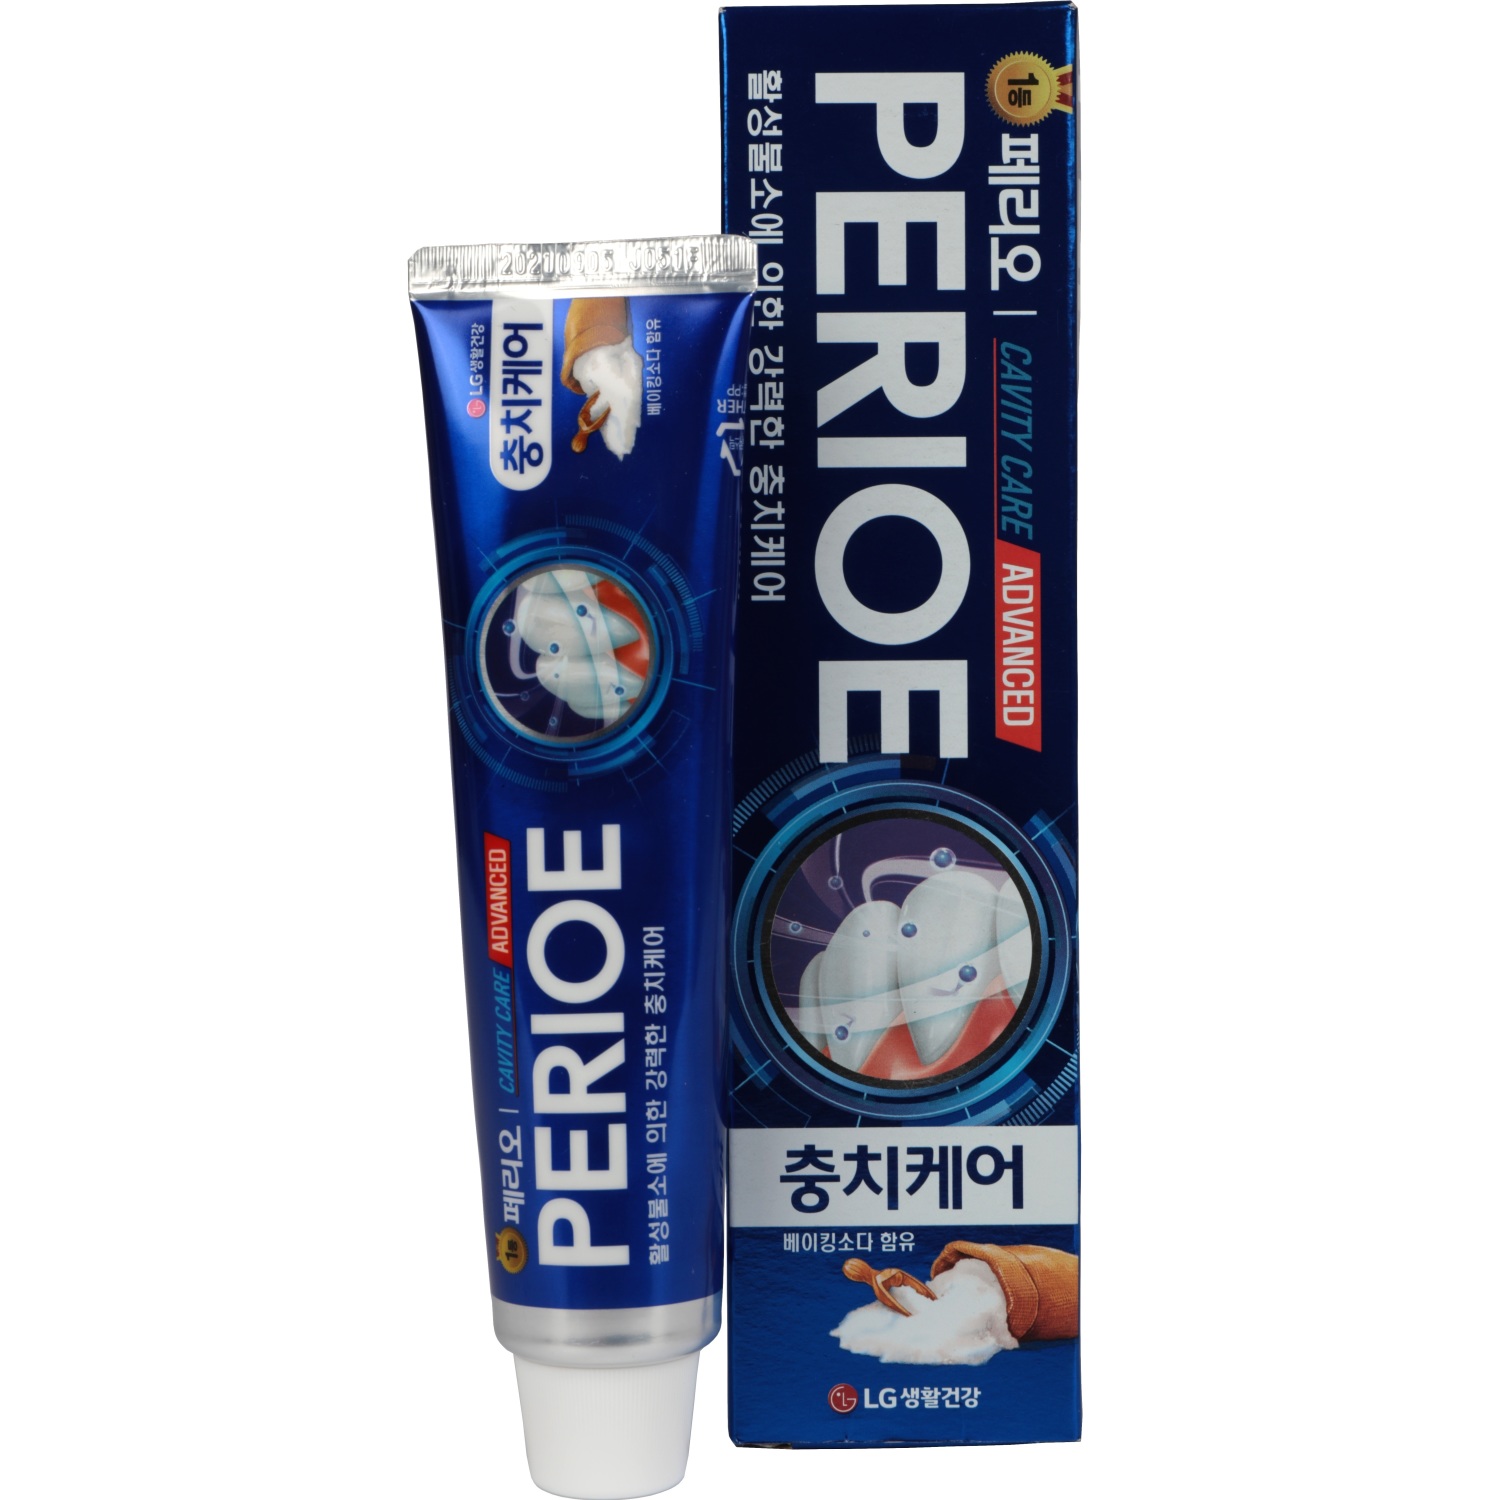 Зубная паста Perioe Cavity Care Advanced для эффективной борьбы с кариесом 130 г зубная паста lg perioe pumping citrus 285 г